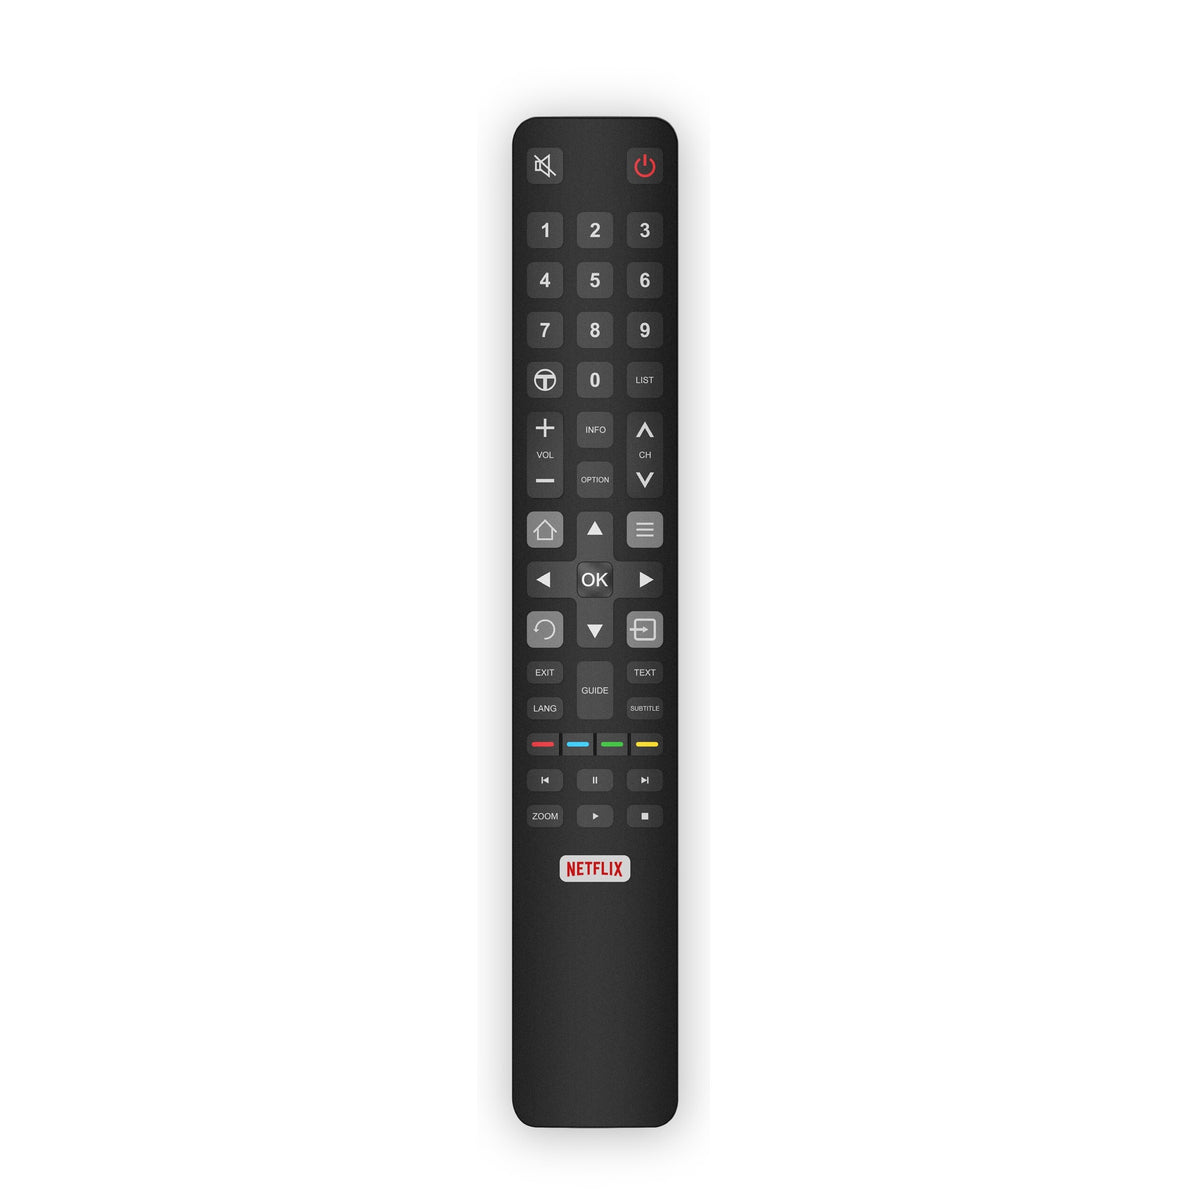 Smart televize TCL 65P615 (2020) / 65&quot; (164 cm)